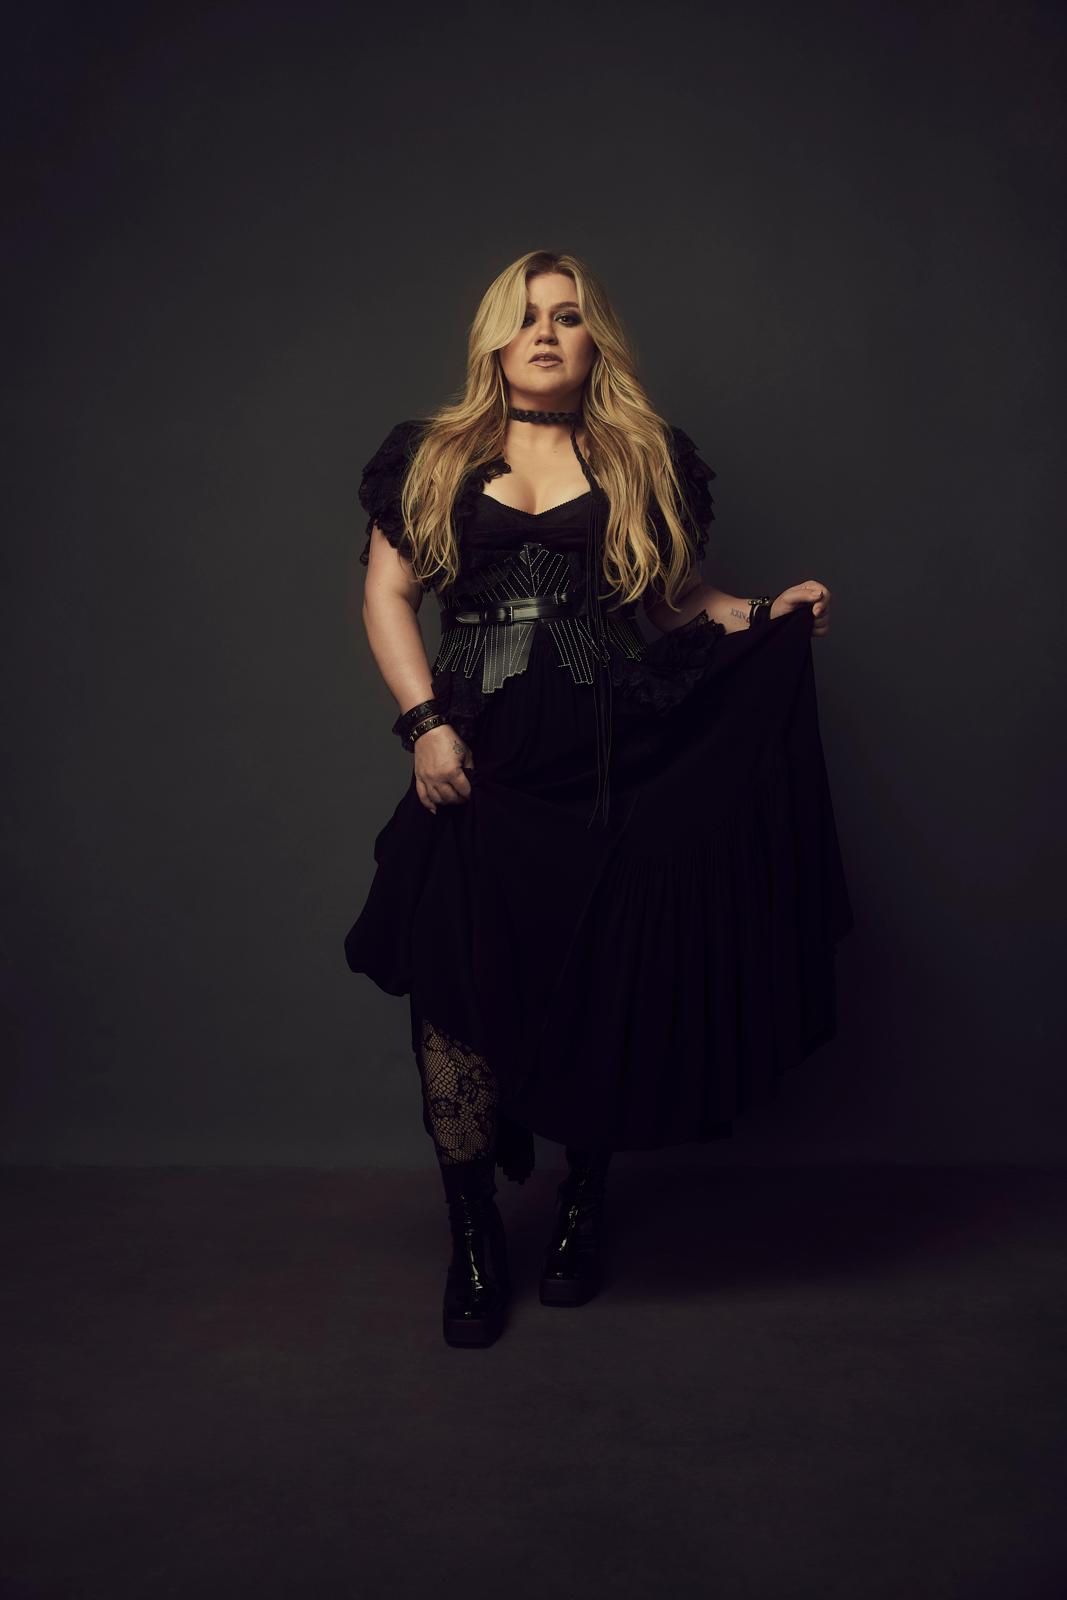 Kelly Clarkson veröffentlicht Doppelsingle "Mine" / "Me" und kündigt